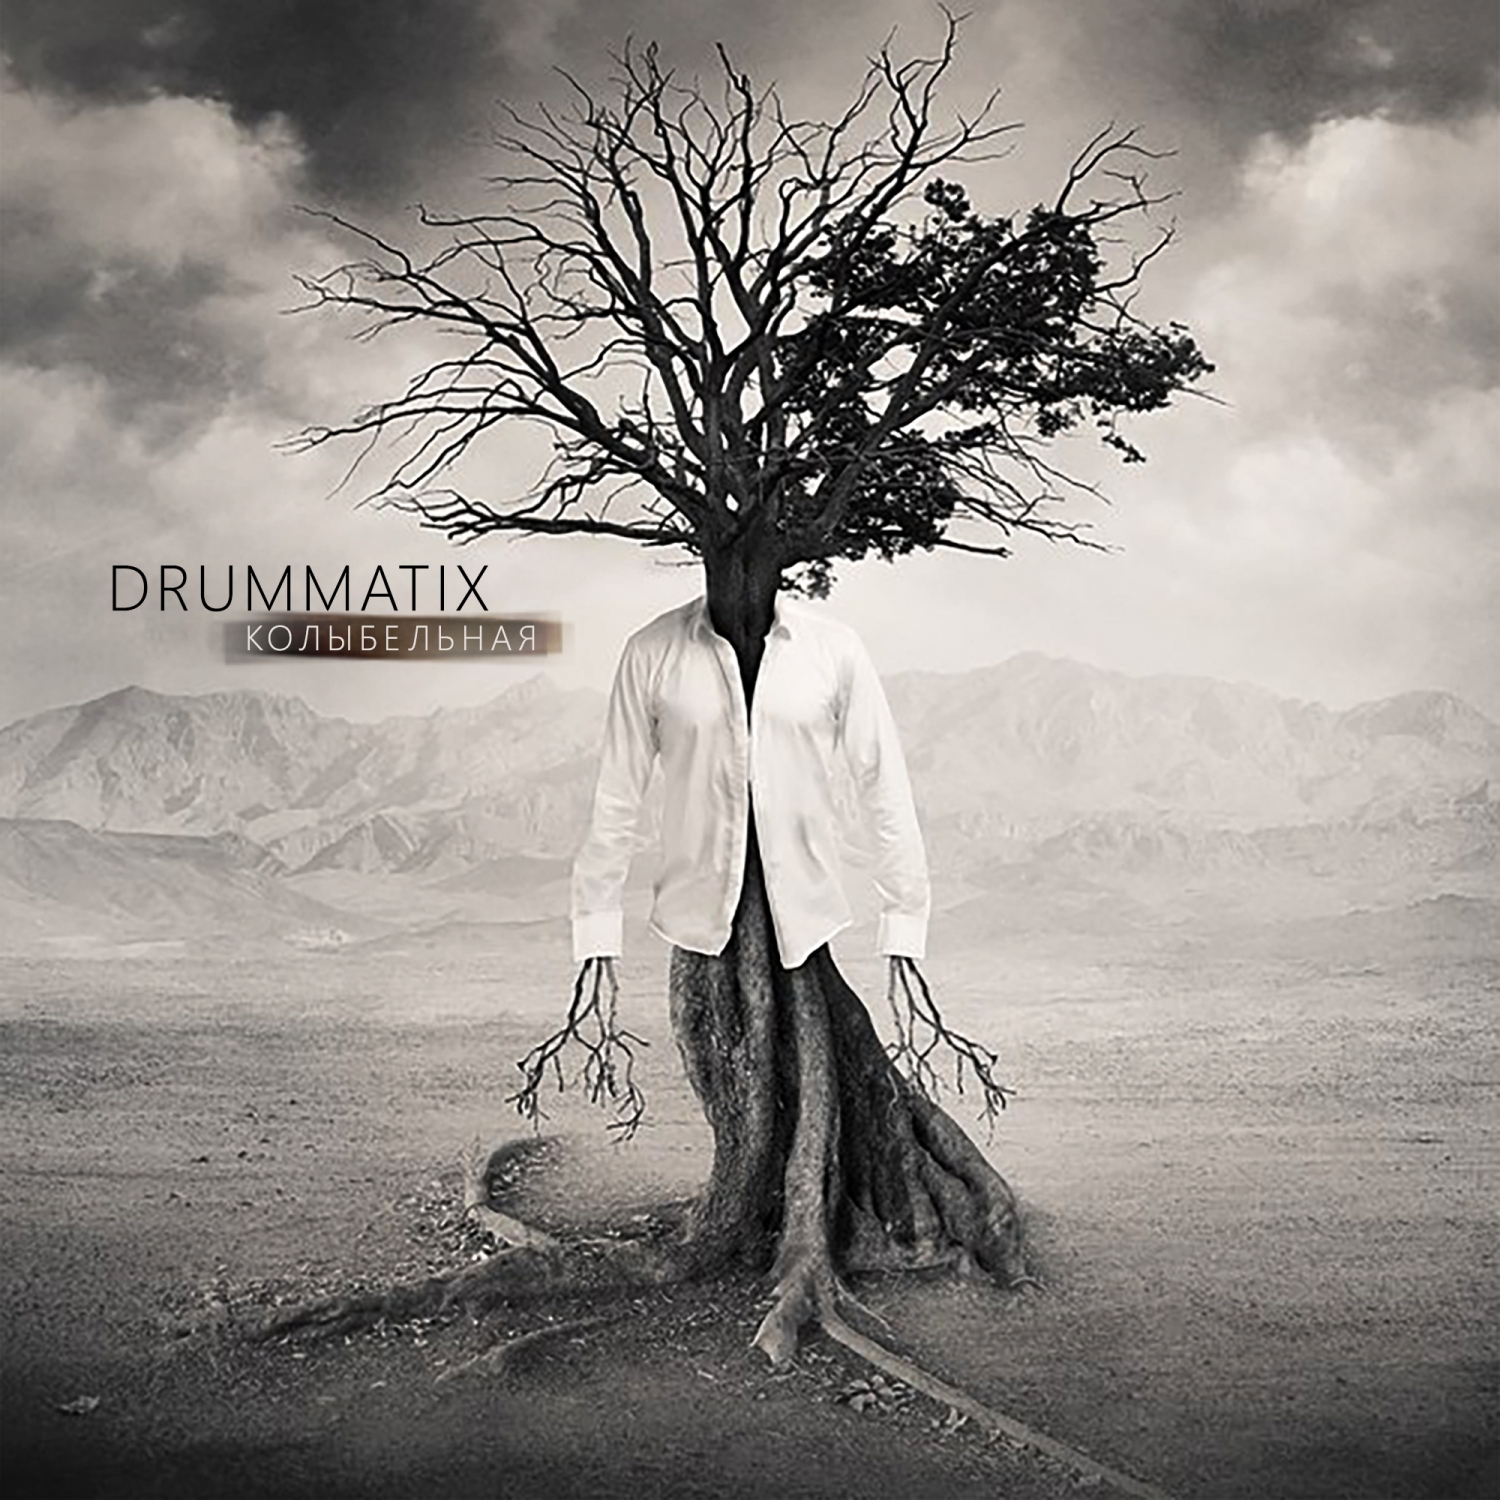 Drummatix духи